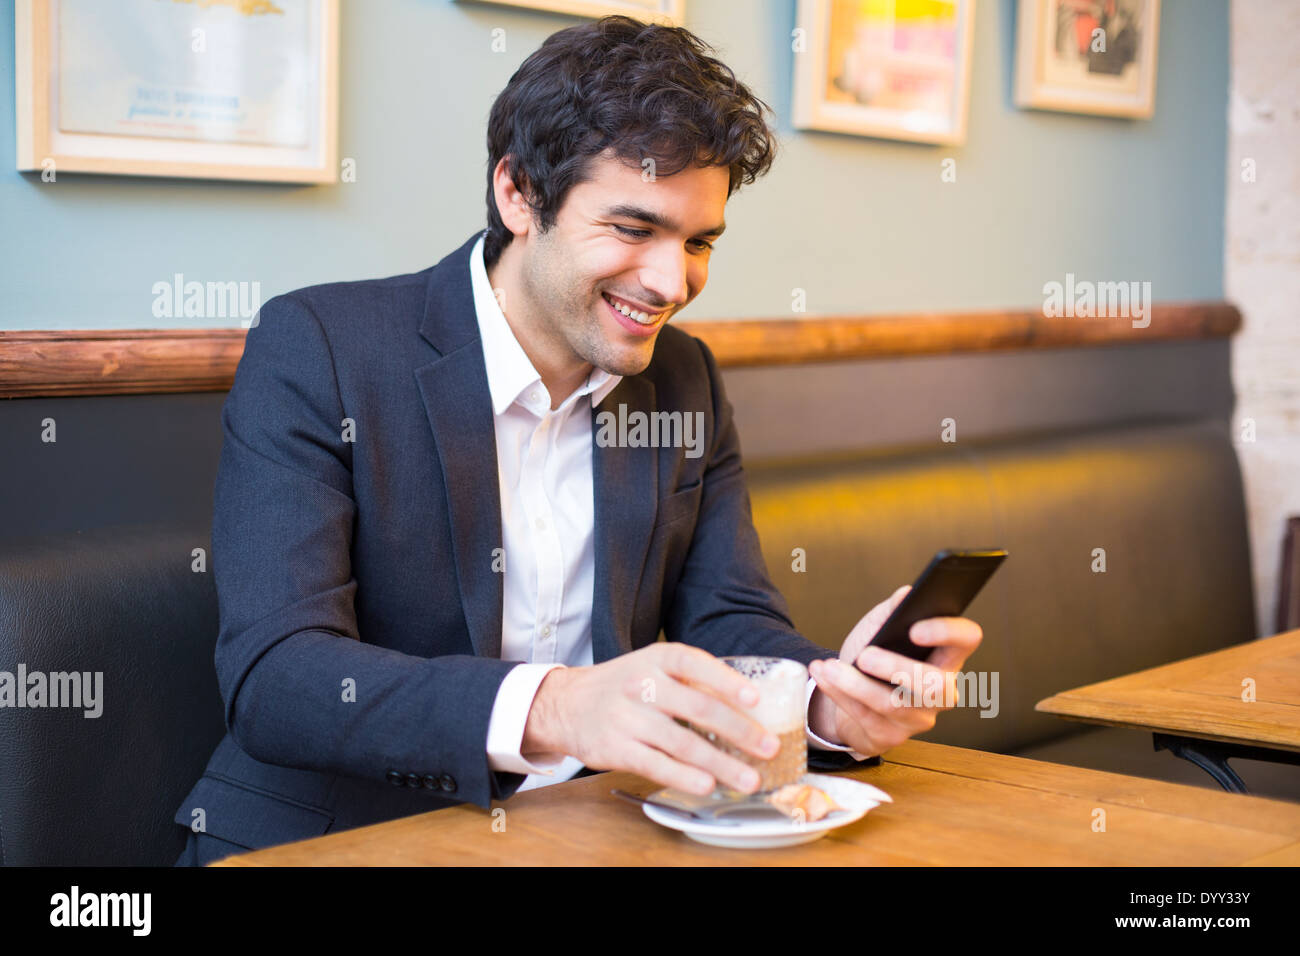 Maschio allegro ristorante cafe smartphone messaggi sms Foto Stock